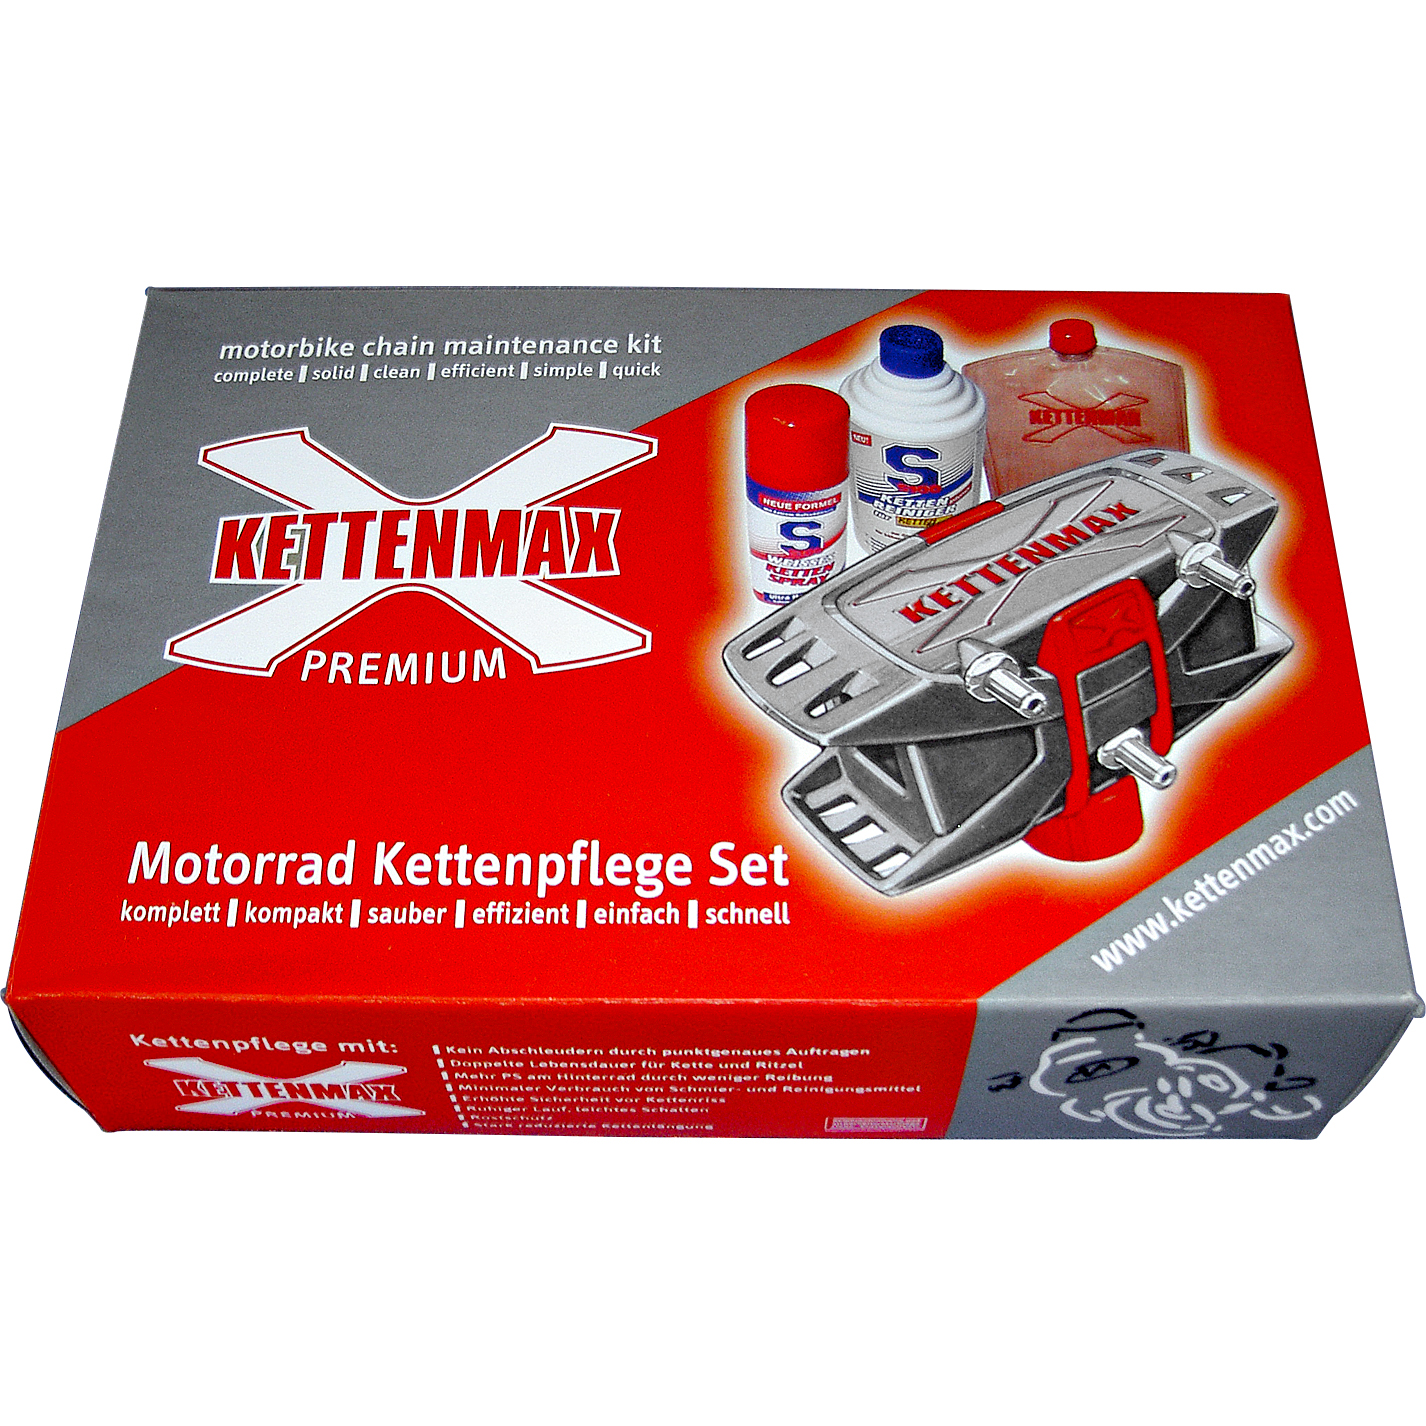 Kettenmax Premium Ketten-Pflegewerkzeug mit S100 Kettenreiniger